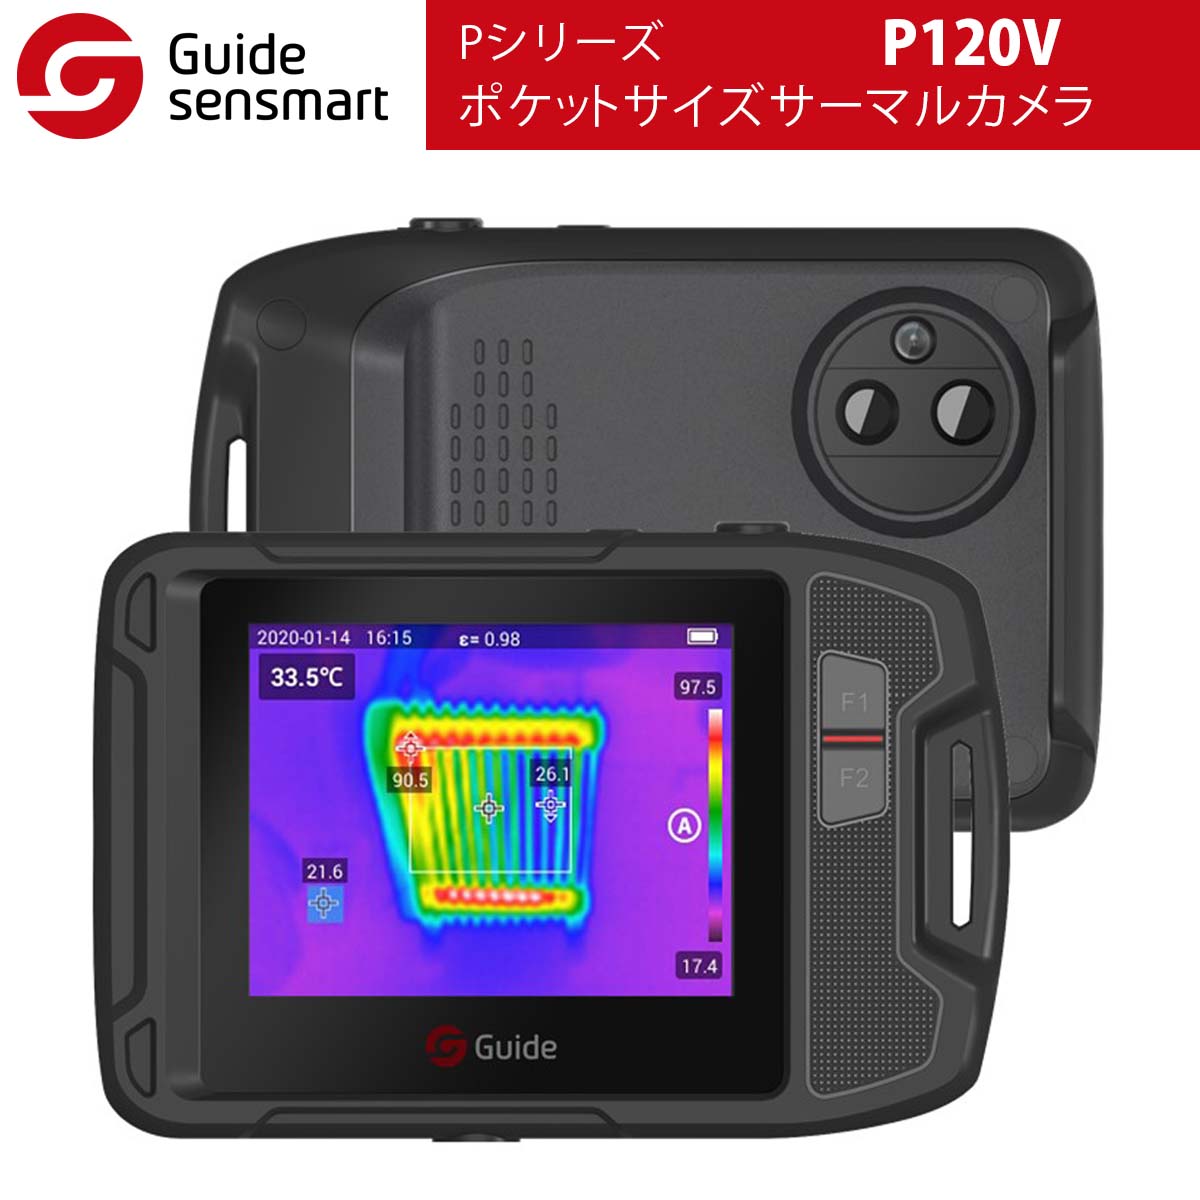 Guide sensmart Pシリーズ ポケットサイズサーマルカメラ P120V | 温 